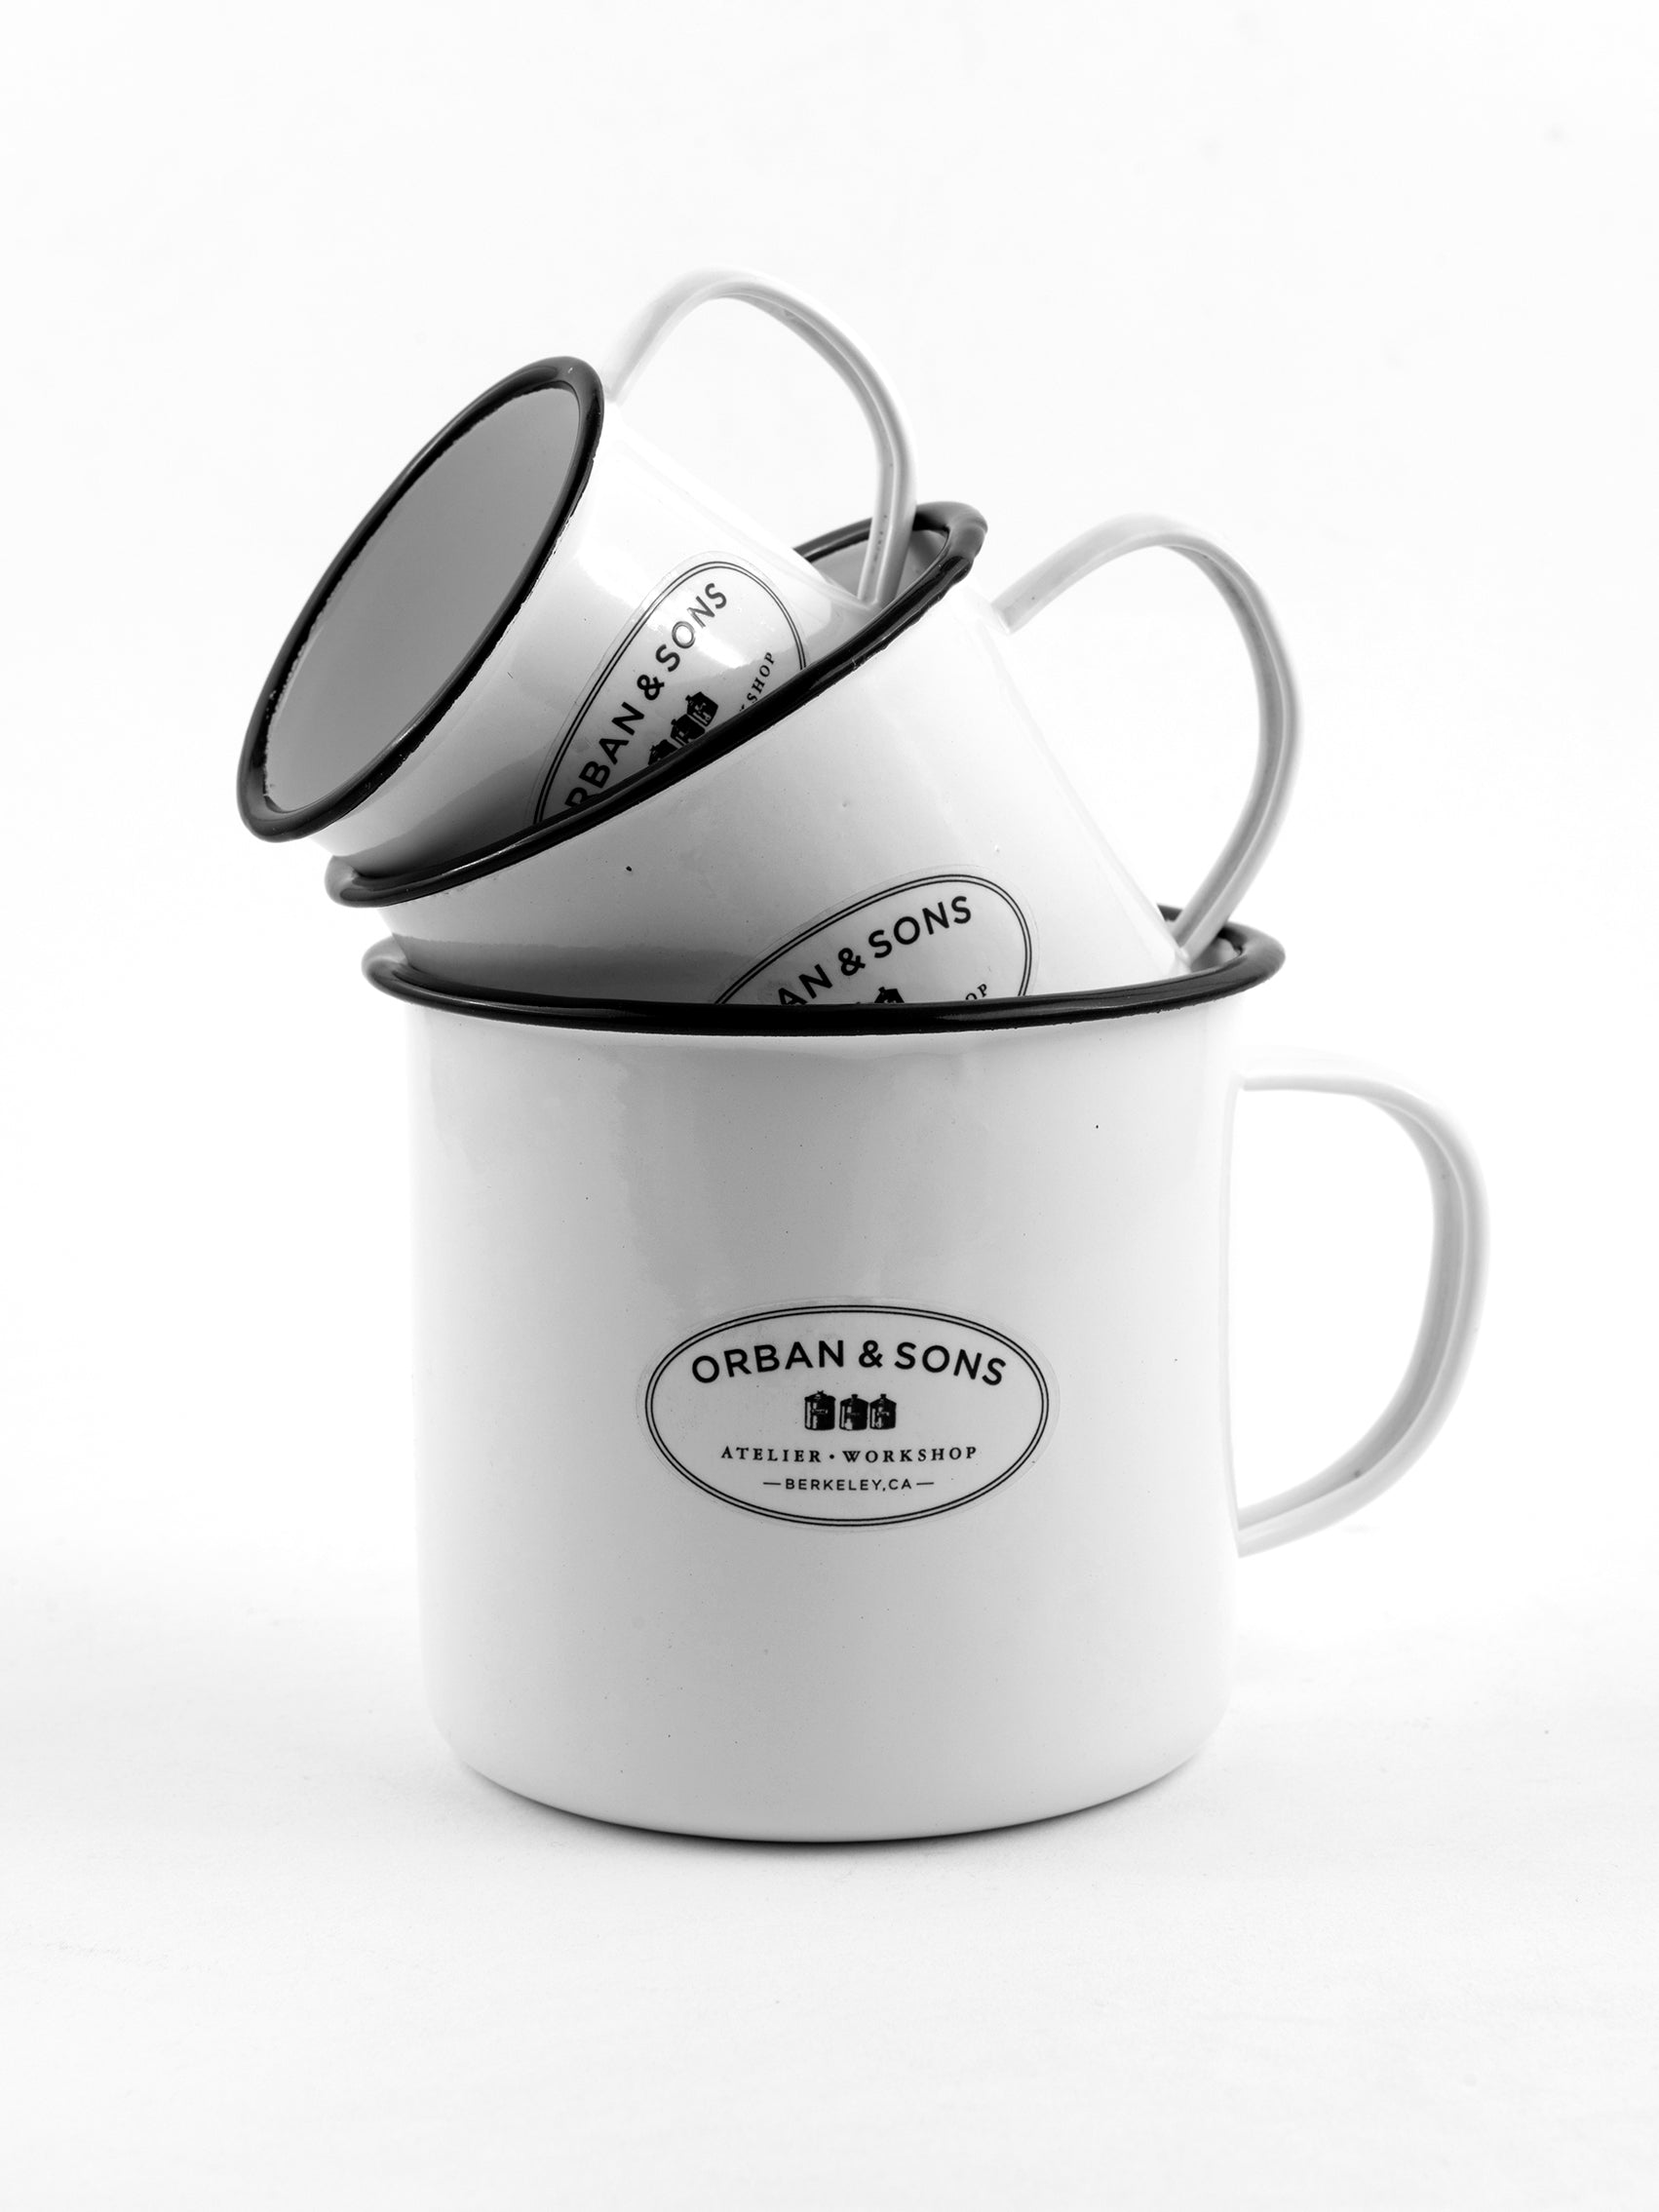 Orban & Sons Enamel Medium Mug Mugs Orban & Sons Brand_Orban & Sons CLEAN OUT SALE Cups & Mugs Enamelware Kitchen_Drinkware KTFWHS Orban & Sons DSC3985_JasonLeCras_July_26_11ed4964-96d0-4ec5-b498-90f0d760acda